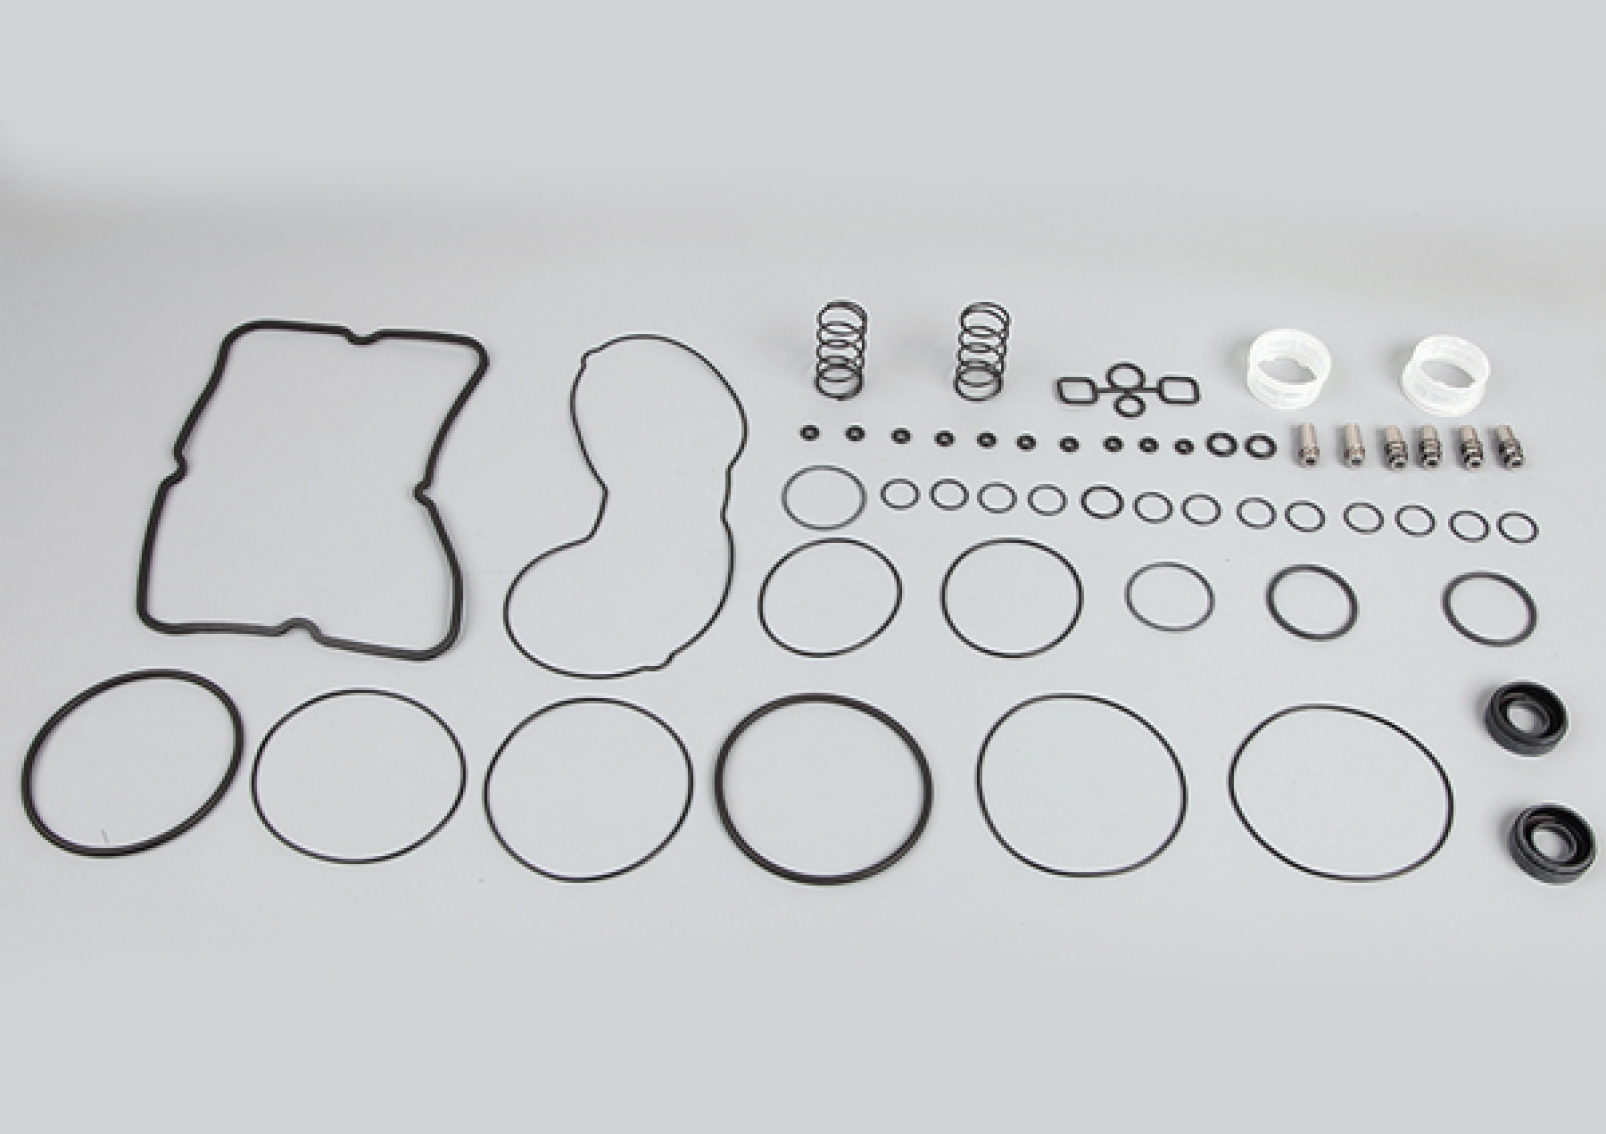 Ebs Trailer Modulator Repair Kit, ES2053, II39782, II3978210